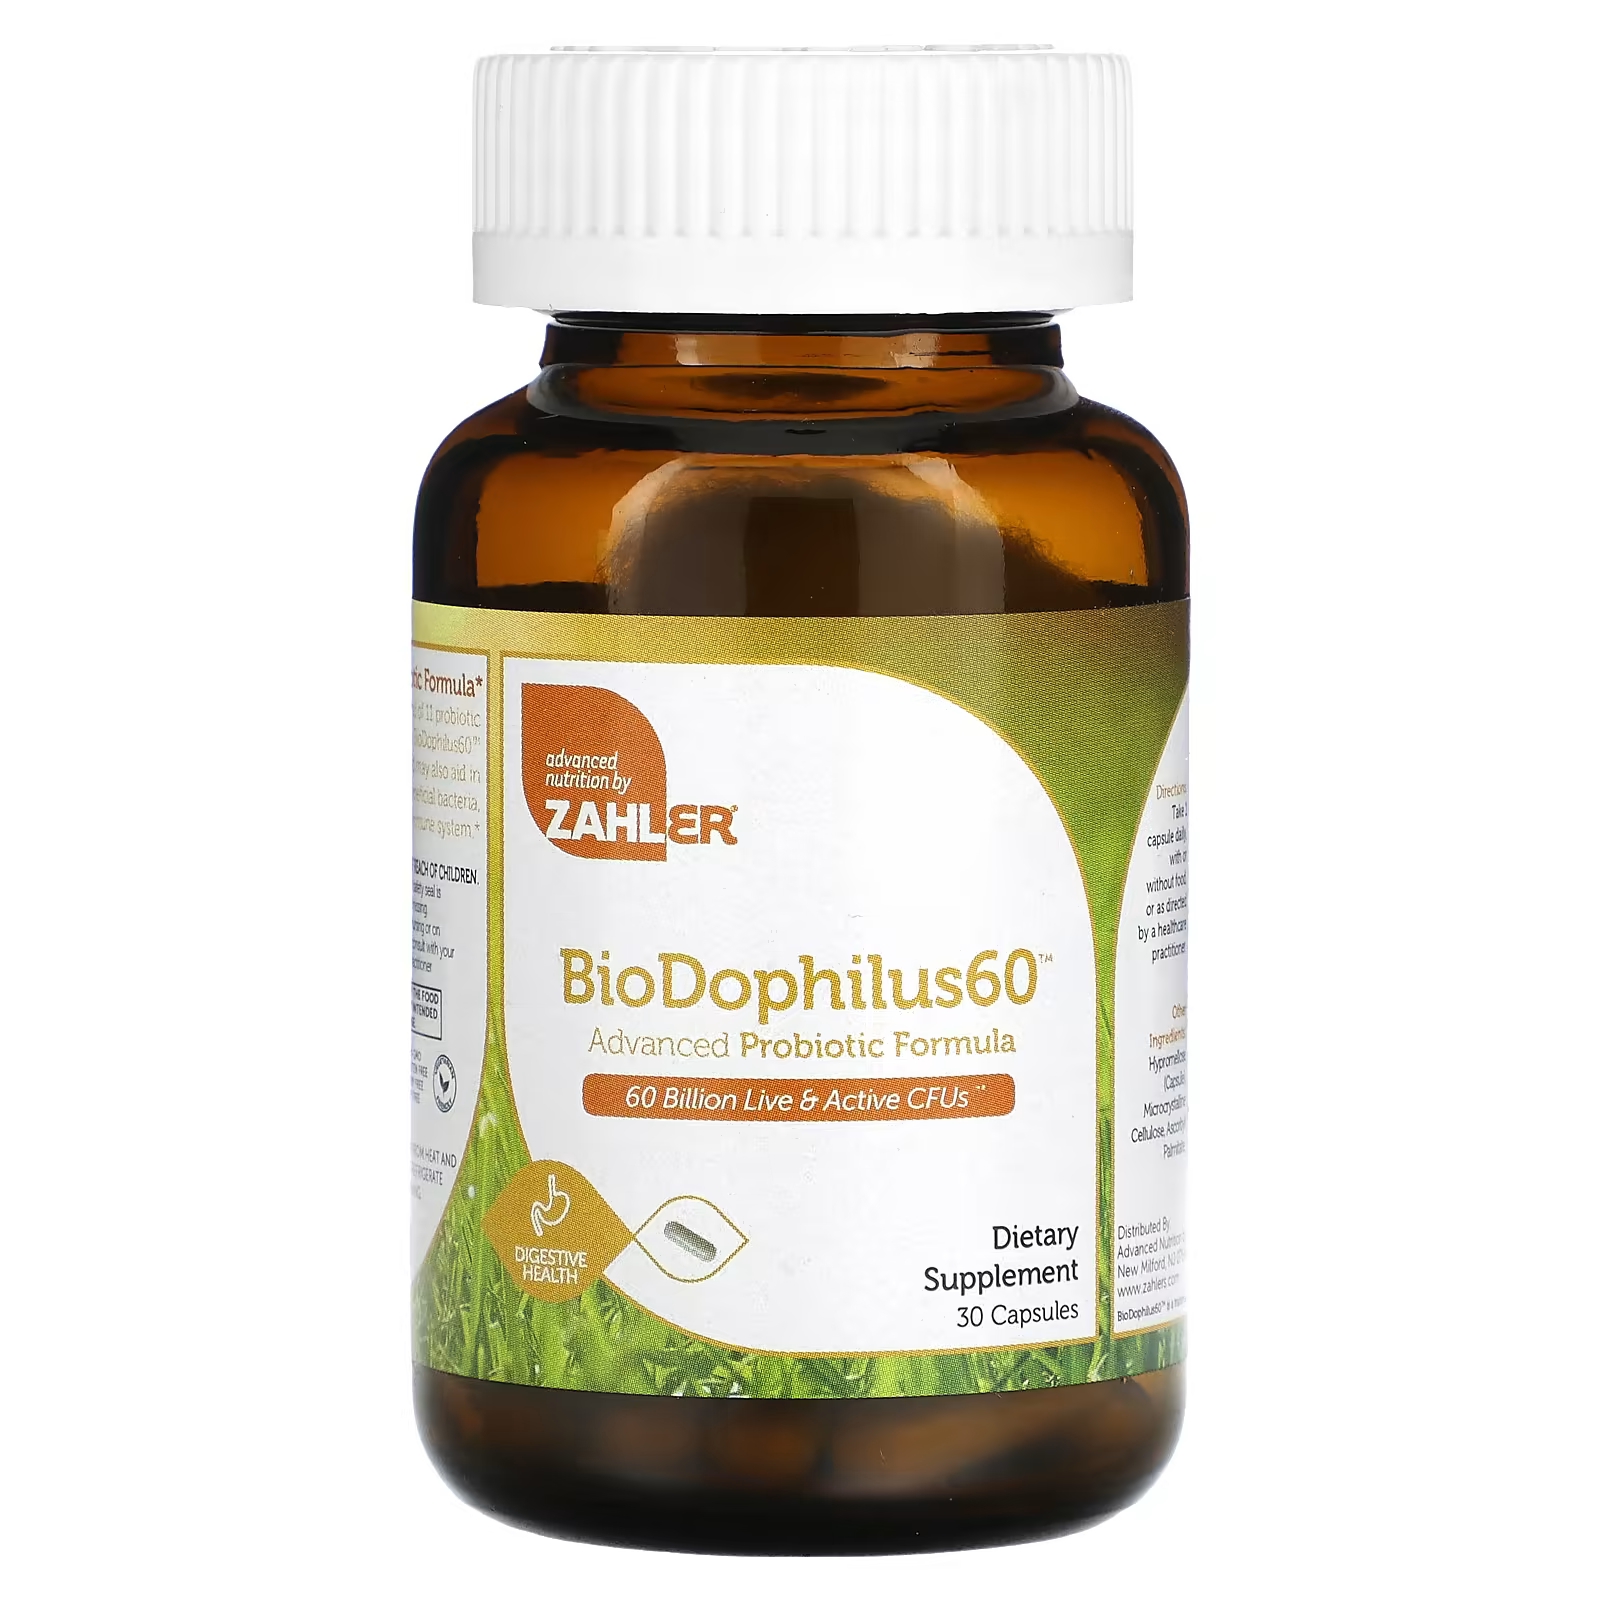 Пищевая добавка Zahler BioDophilus60 улучшенная пробиотическая формула 60 миллиардов КОЕ, 30 капсул zahler biodophilus25 улучшенная формула с пробиотиками 60 капсул